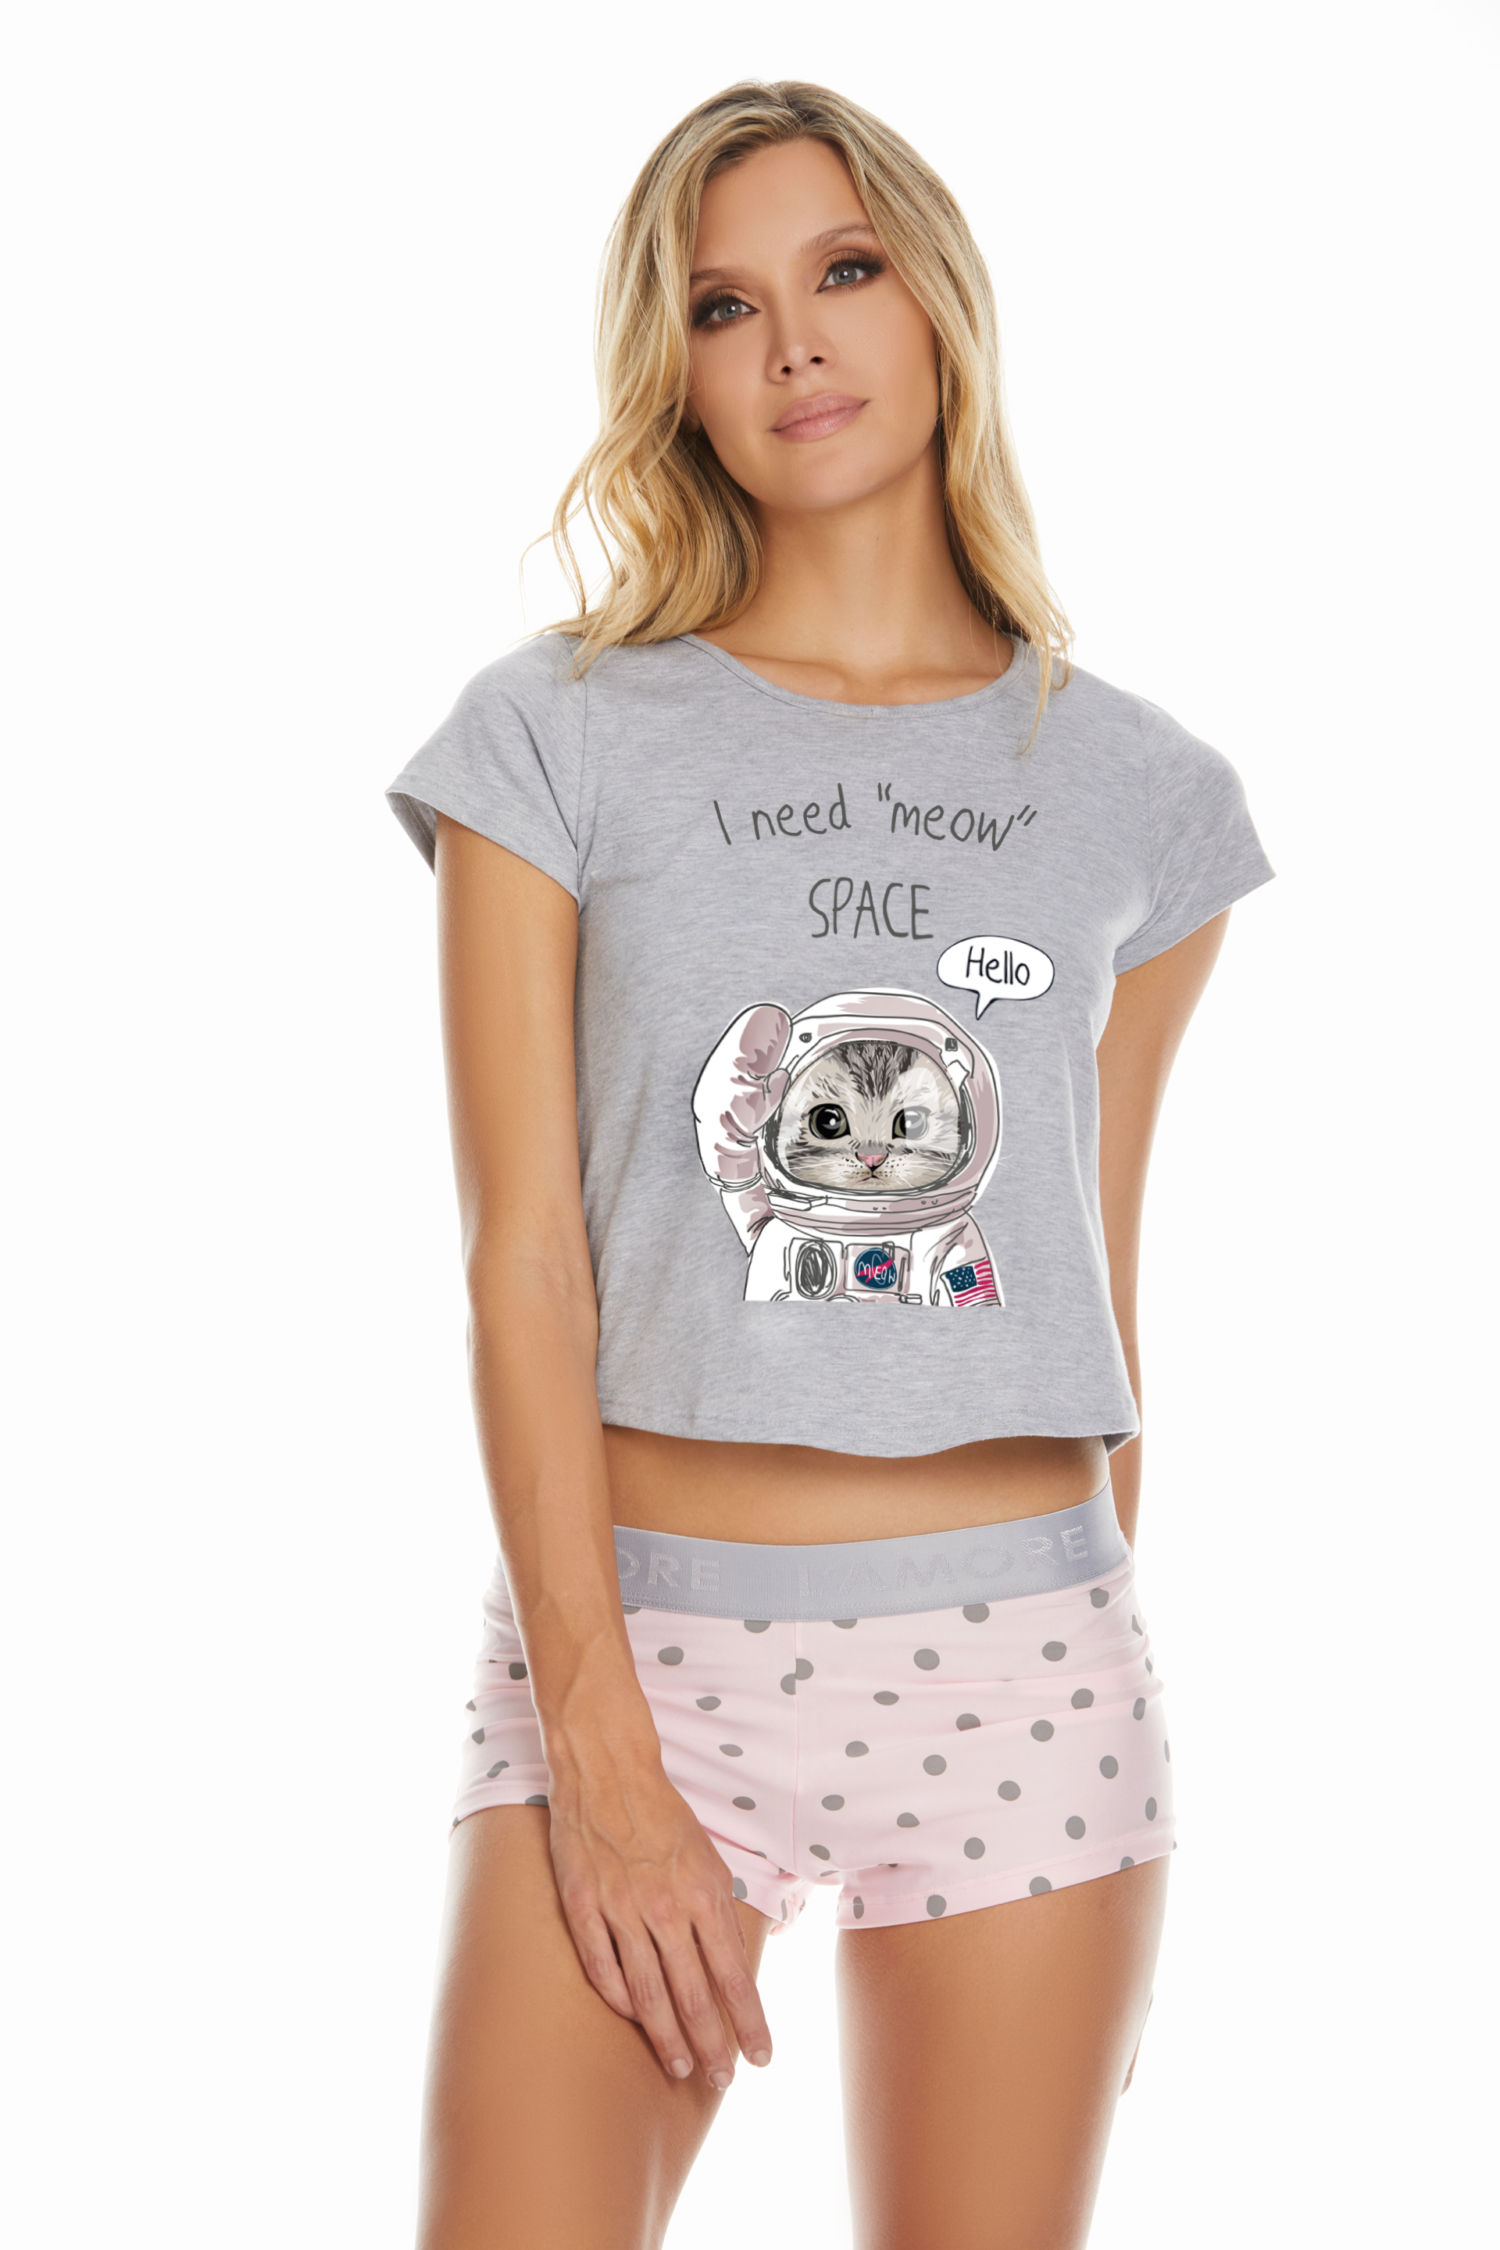 Imagen del producto: Conjunto short con pretina elástico rosado bolas grises camisa gris estampada meow space